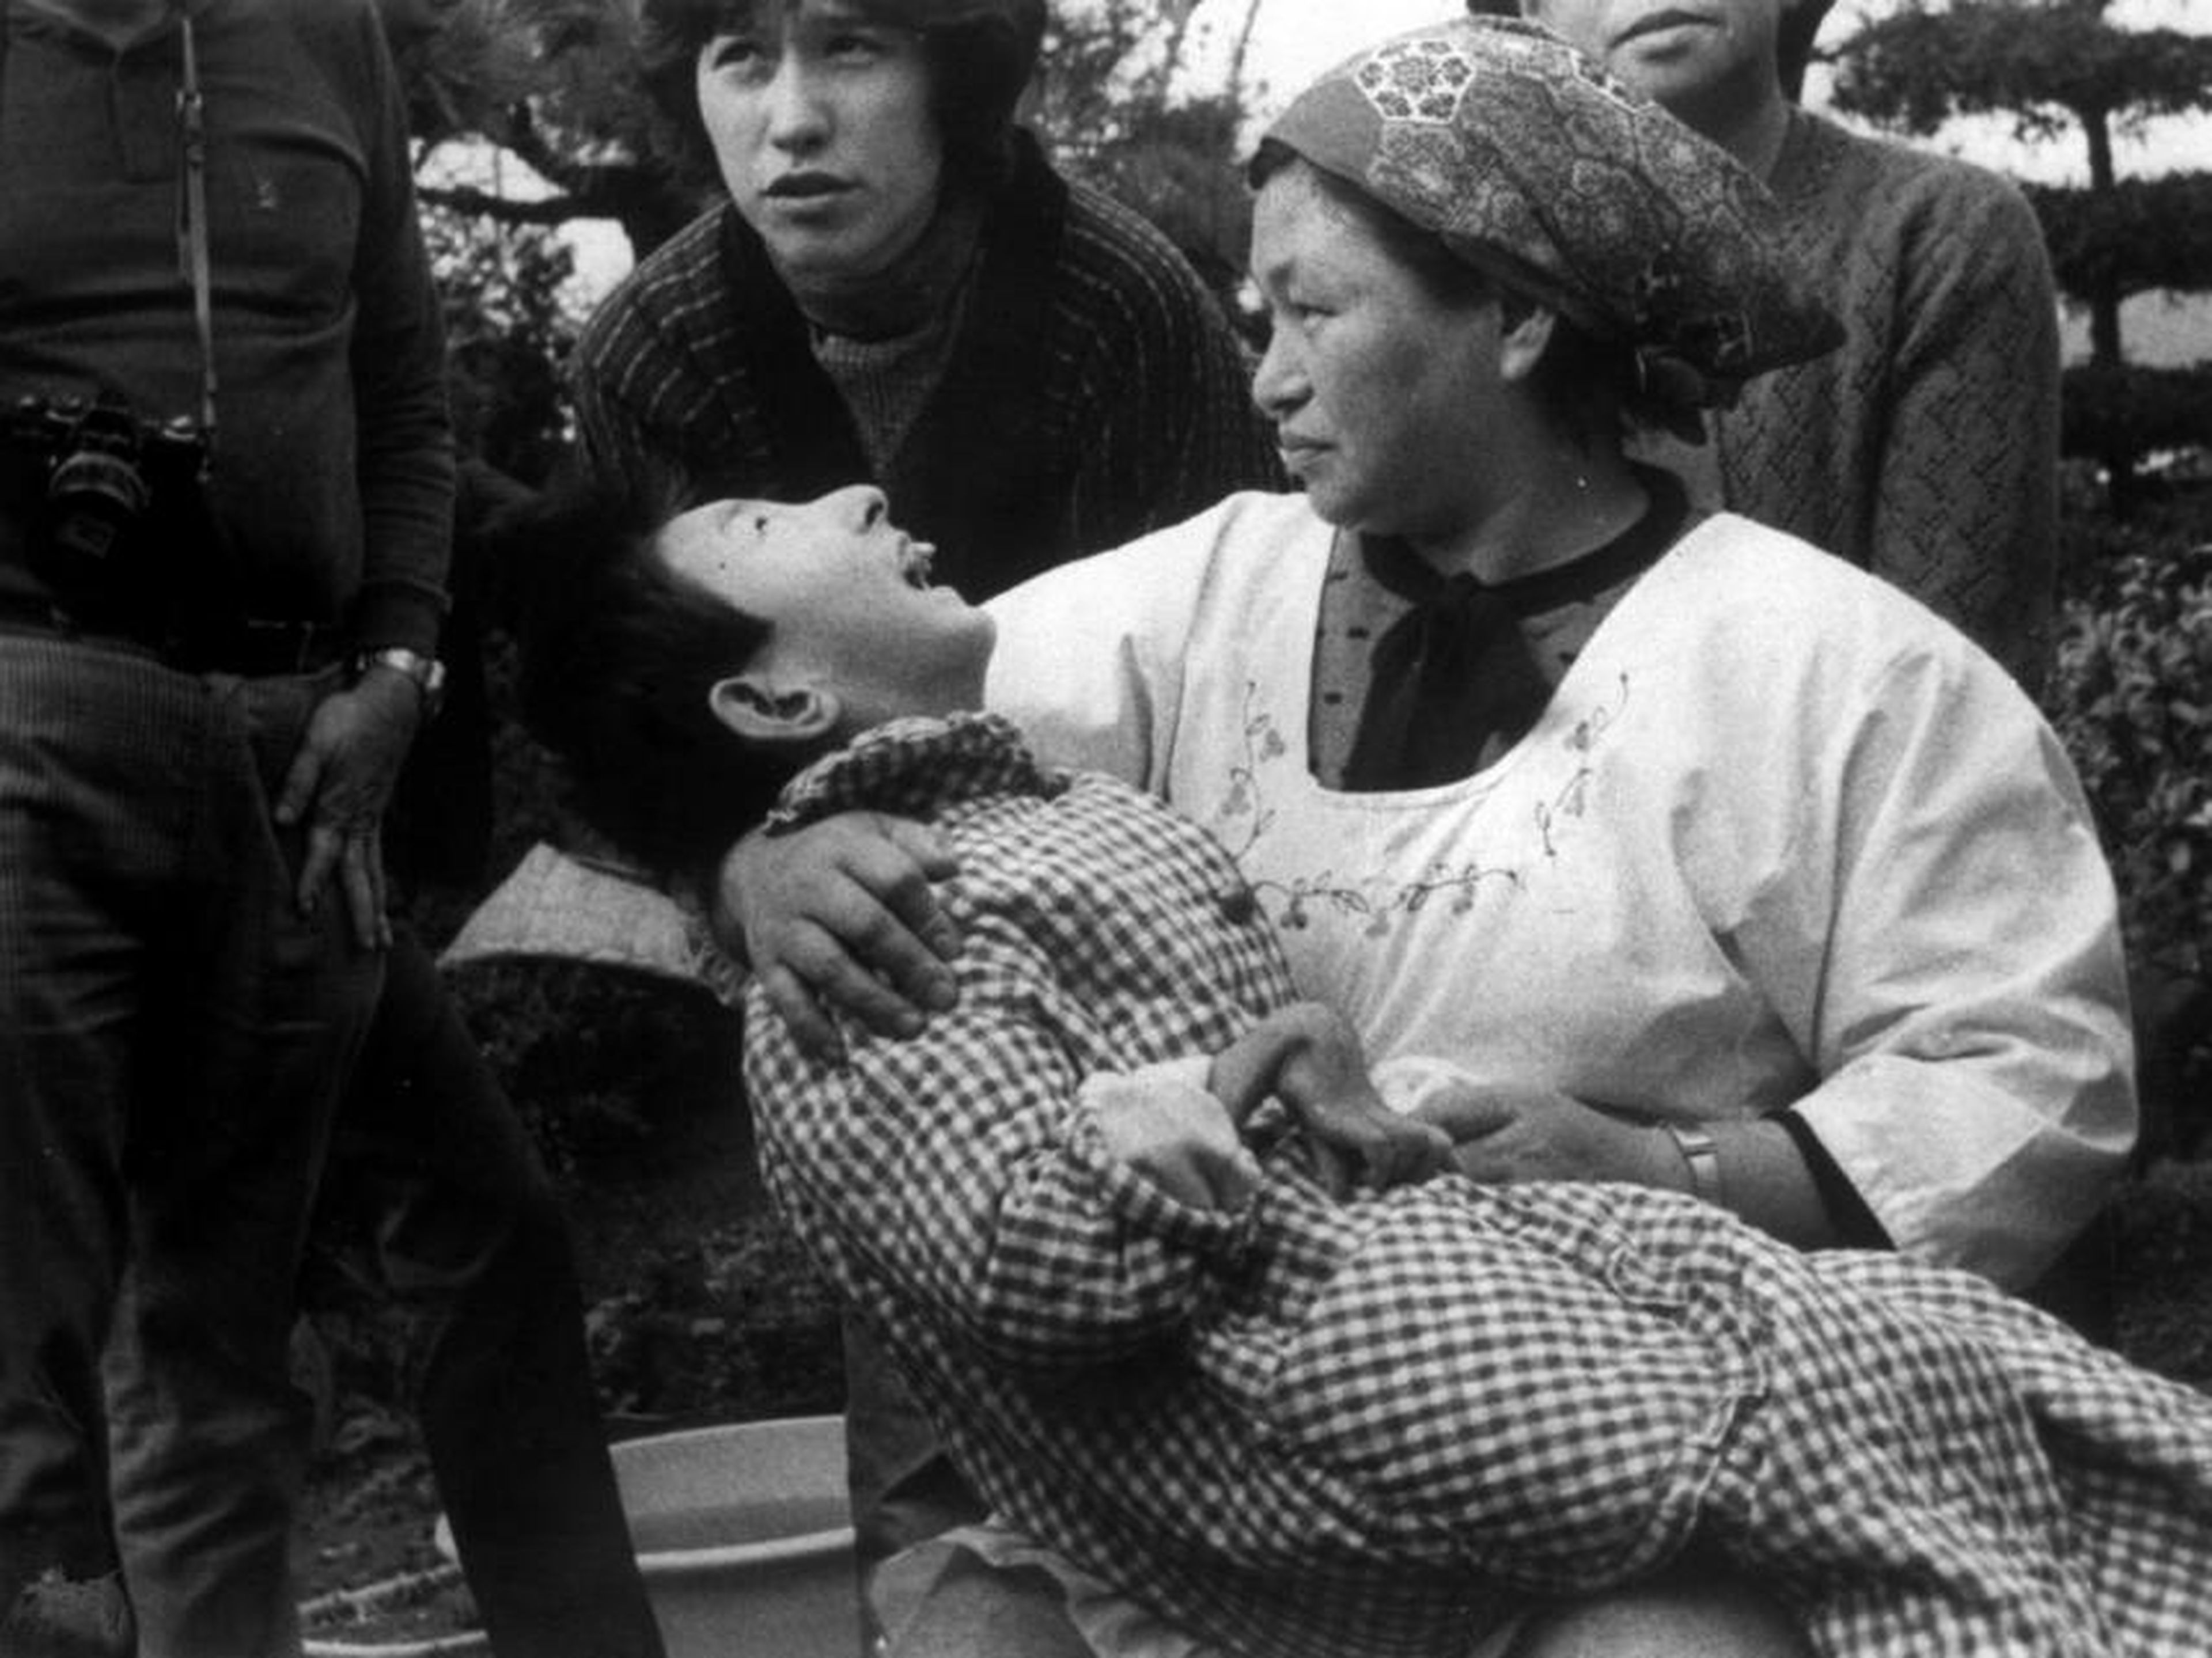 Una mujer sostiene a una víctima de la "enfermedad de Minamata", o envenenamiento por mercurio, en Minamata, Japón, en 1973. La niña tiene una mano malformada, como muchas víctimas de la enfermedad.